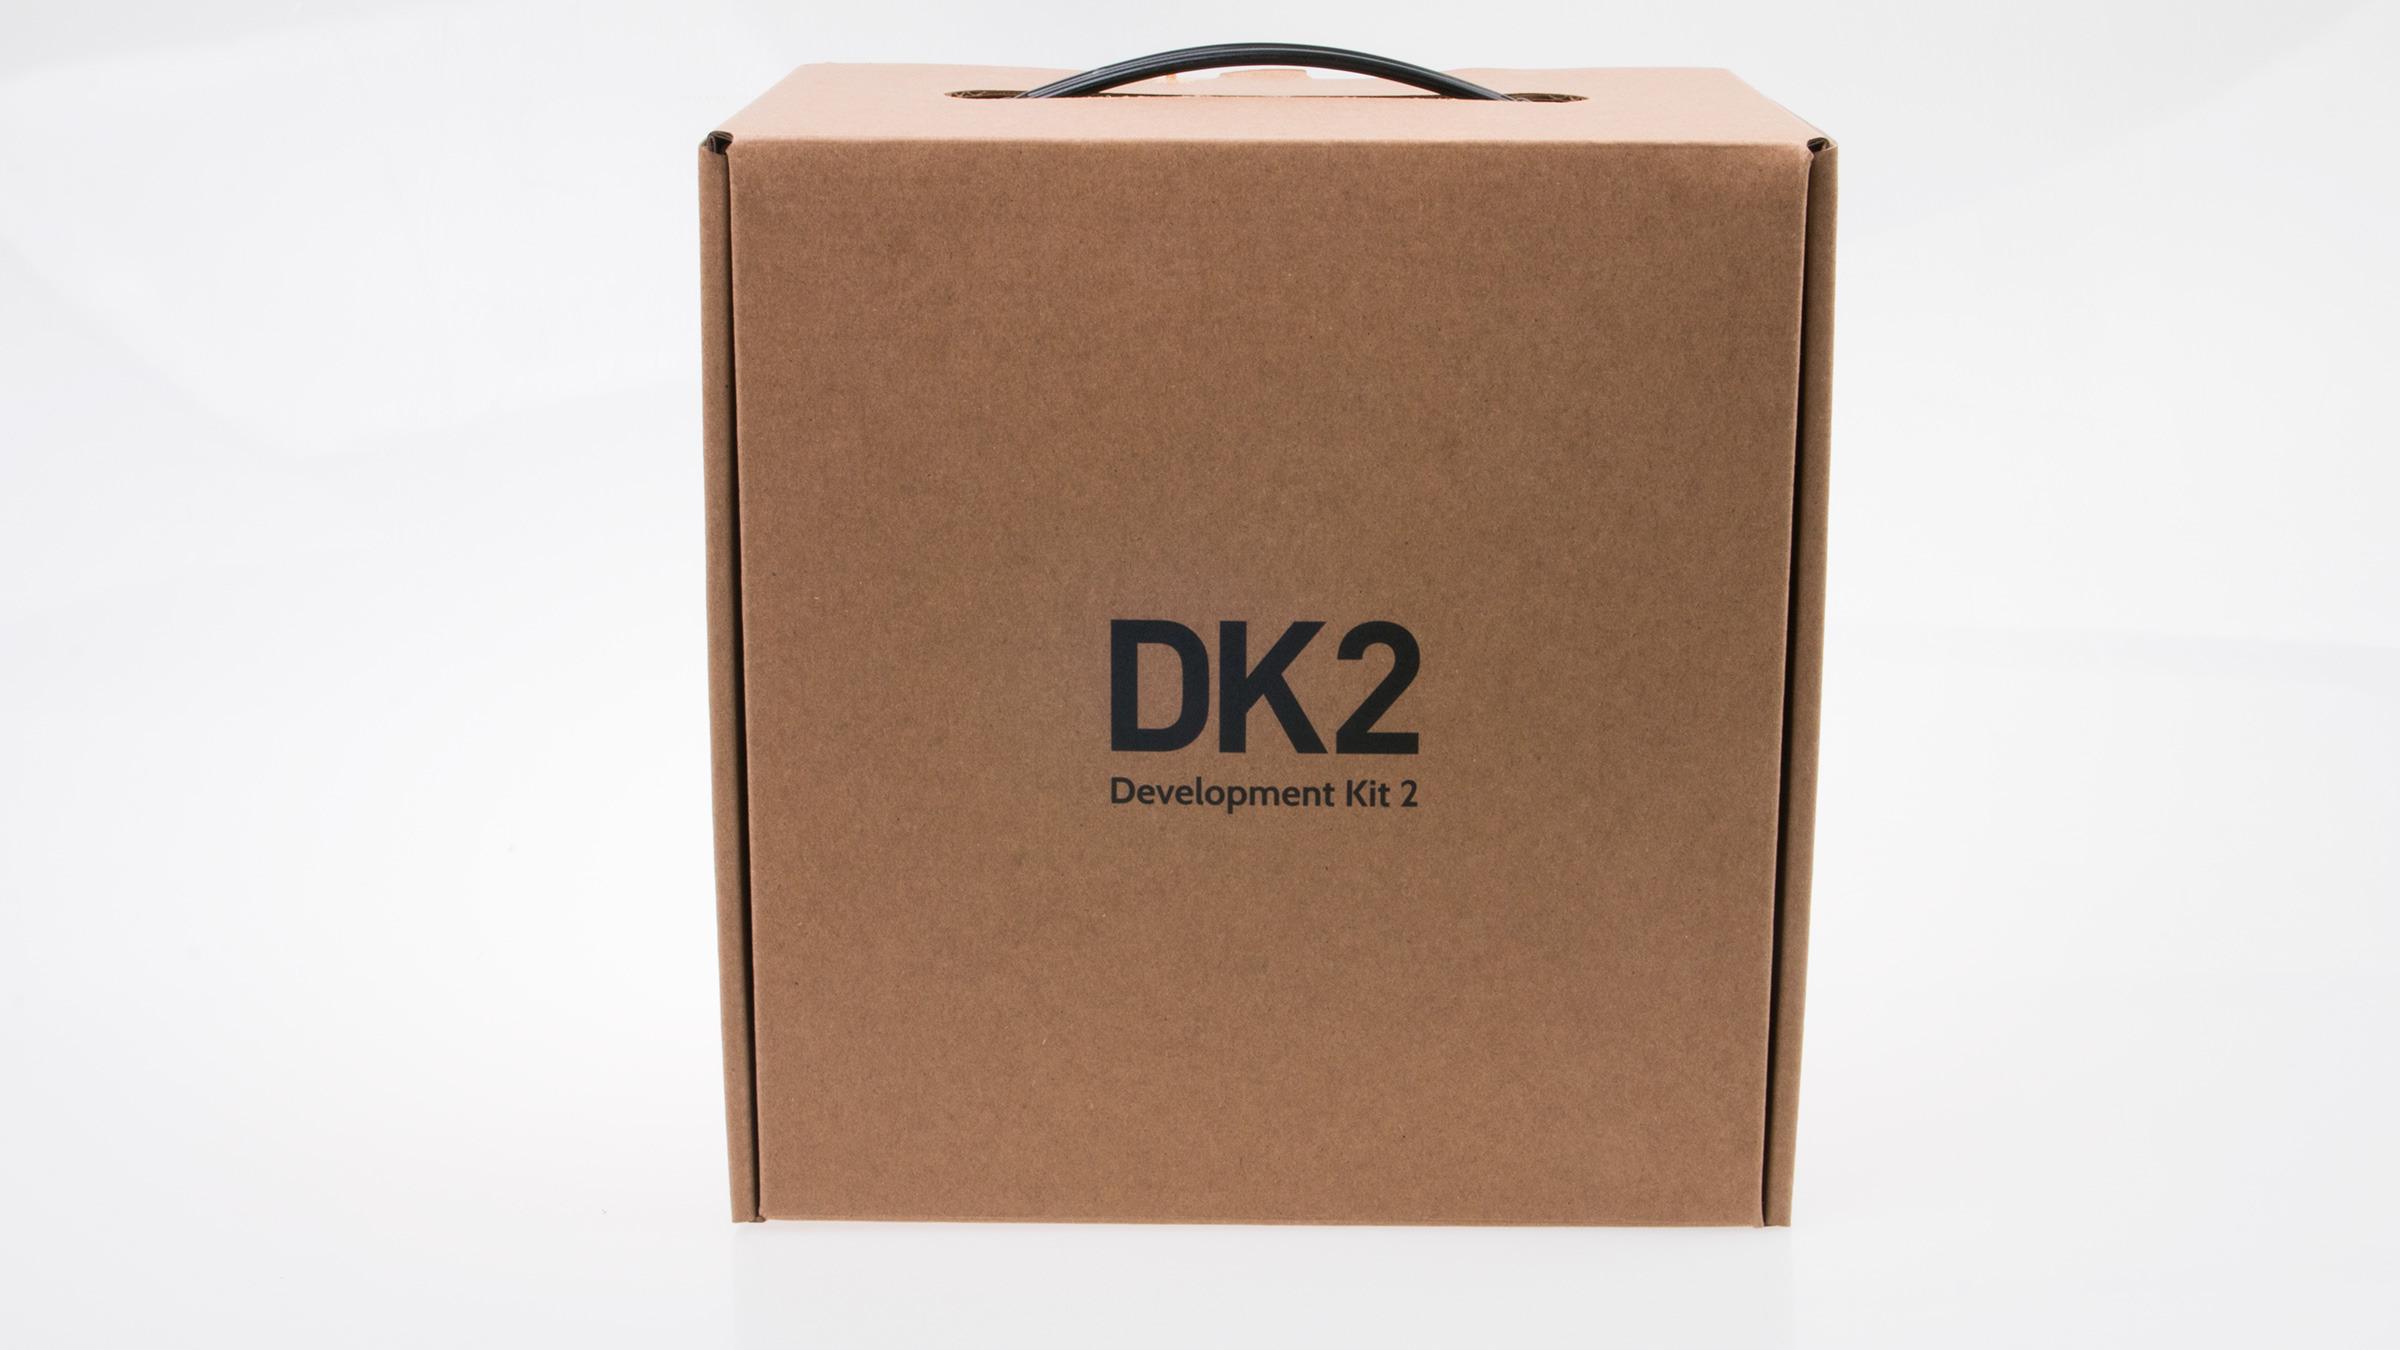 Den opprinnelige Oculus Rift Development Kit kom i en snasen, sort koffert. Oppgraderingen må bo i en pappeske-koffert i stedet, men det er jo det som er på innsiden som teller.Foto: Varg Aamo, Tek.no